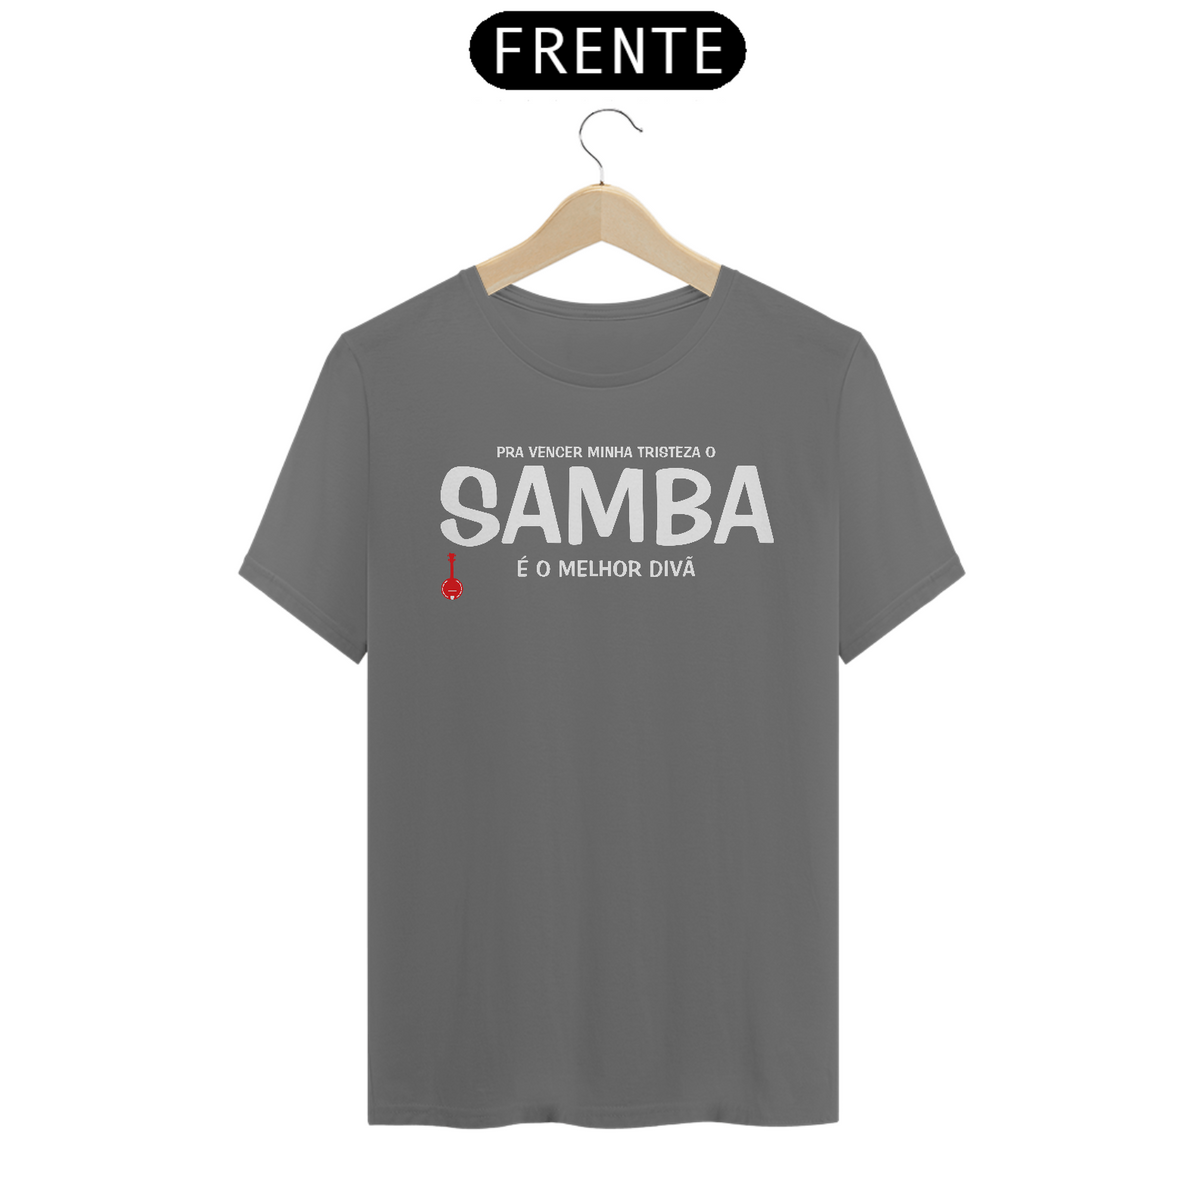 Nome do produto: Camiseta Pra vencer Minha Tristeza o Samba é o Melhor Divã - Cinza Estonada